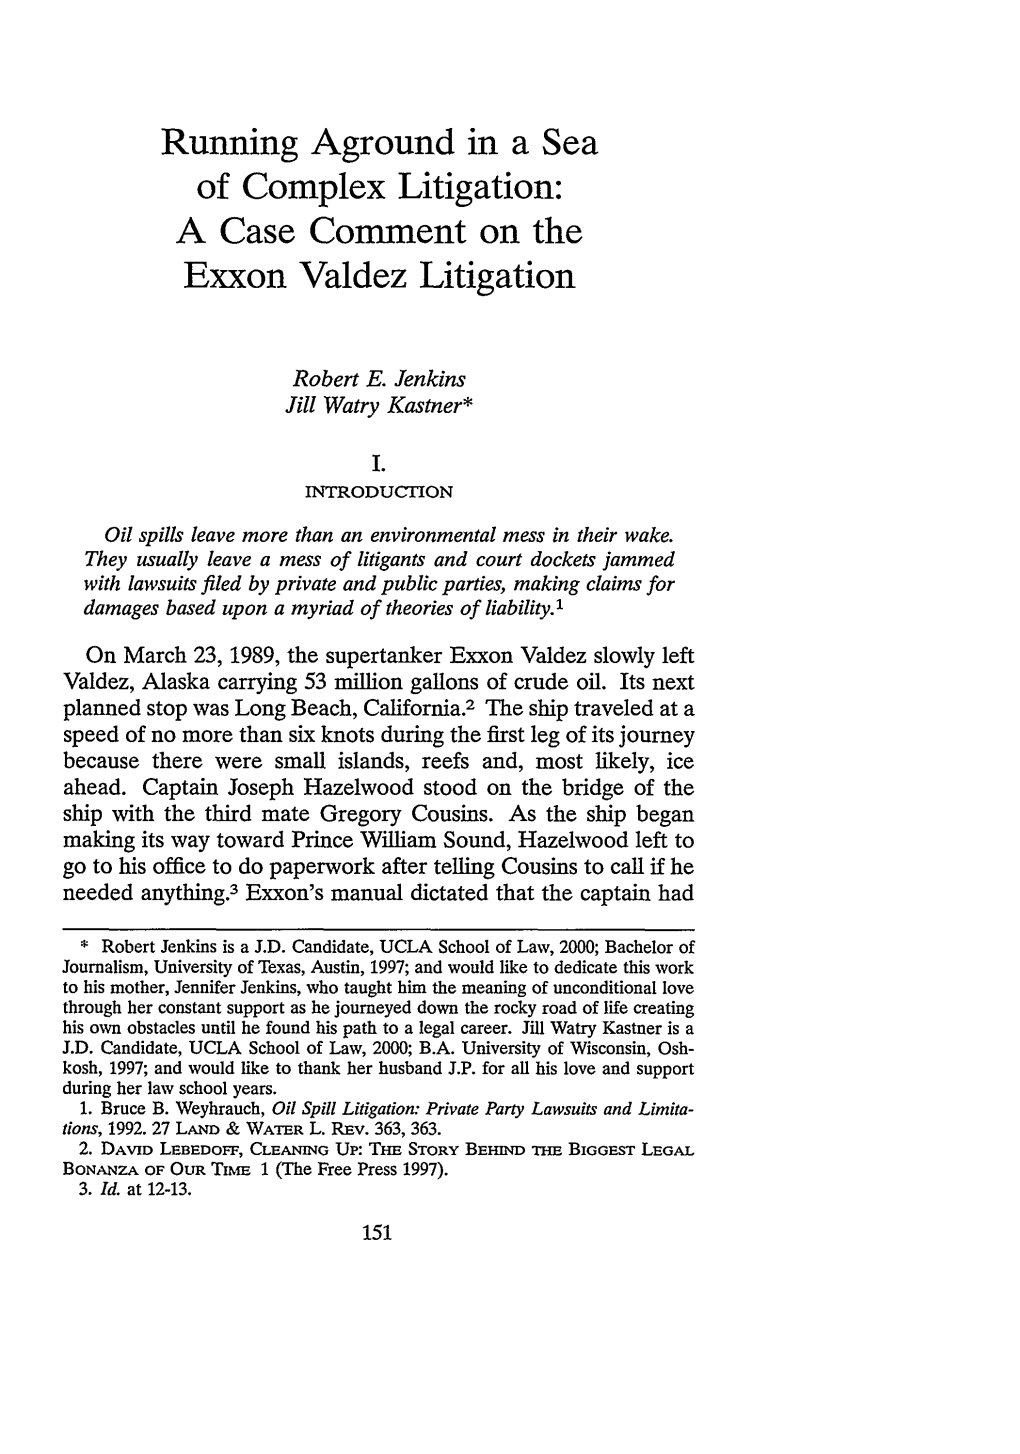 A Case Comment on the Exxon Valdez Litigation